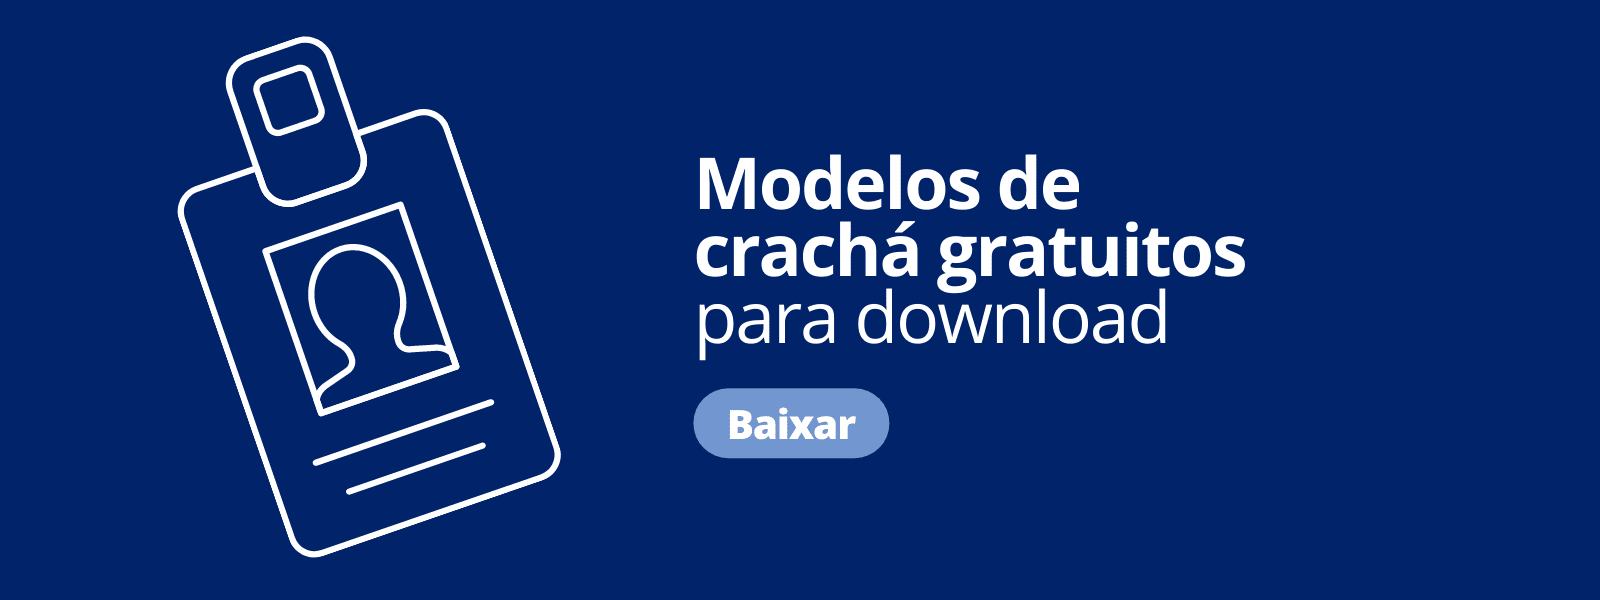 modelo-de-crachas-banner-desktop